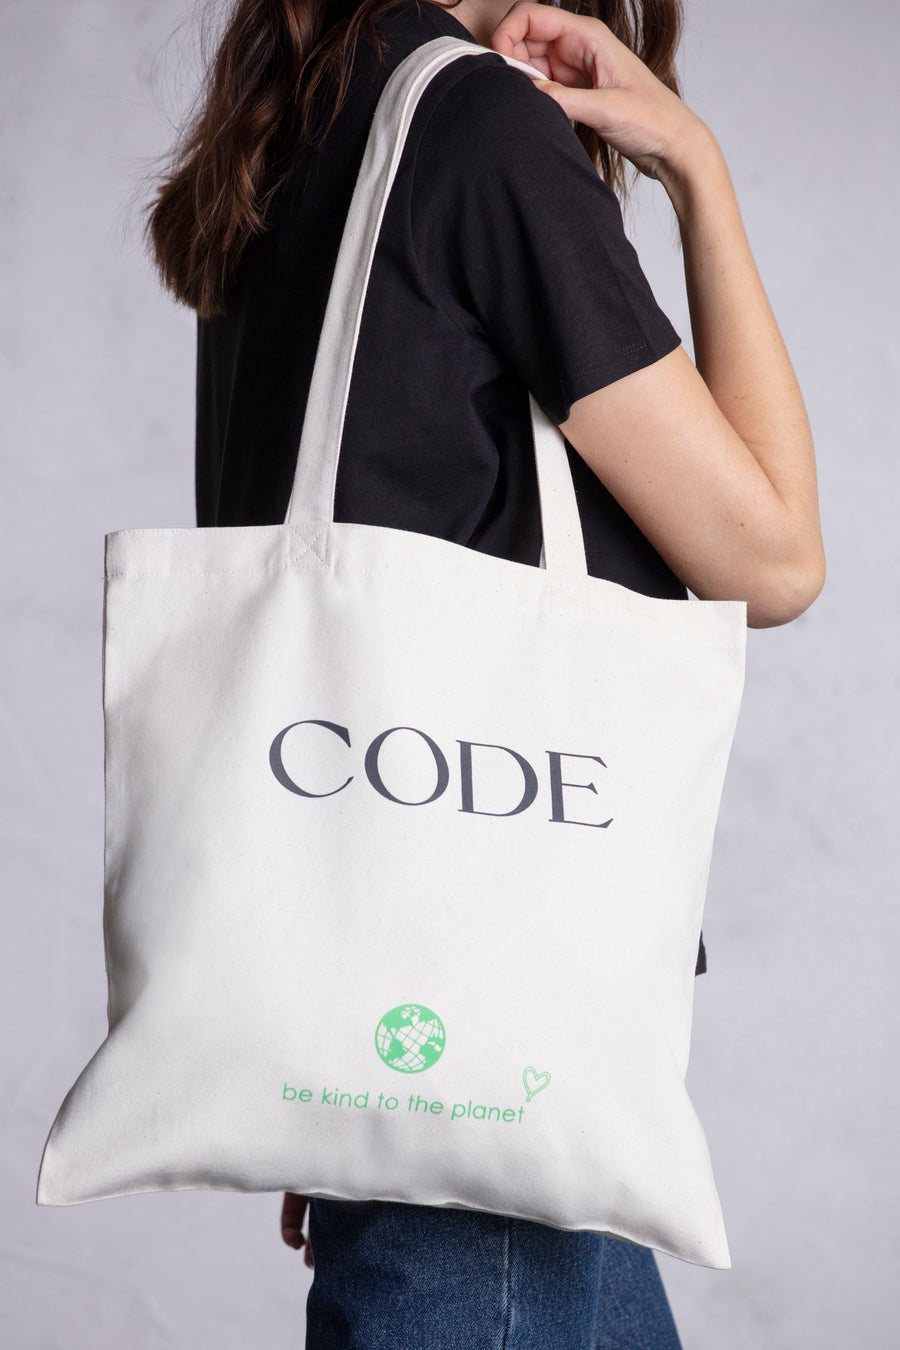 Tote bag alusiva ao mês da sustentabilidade com alças de ombro.